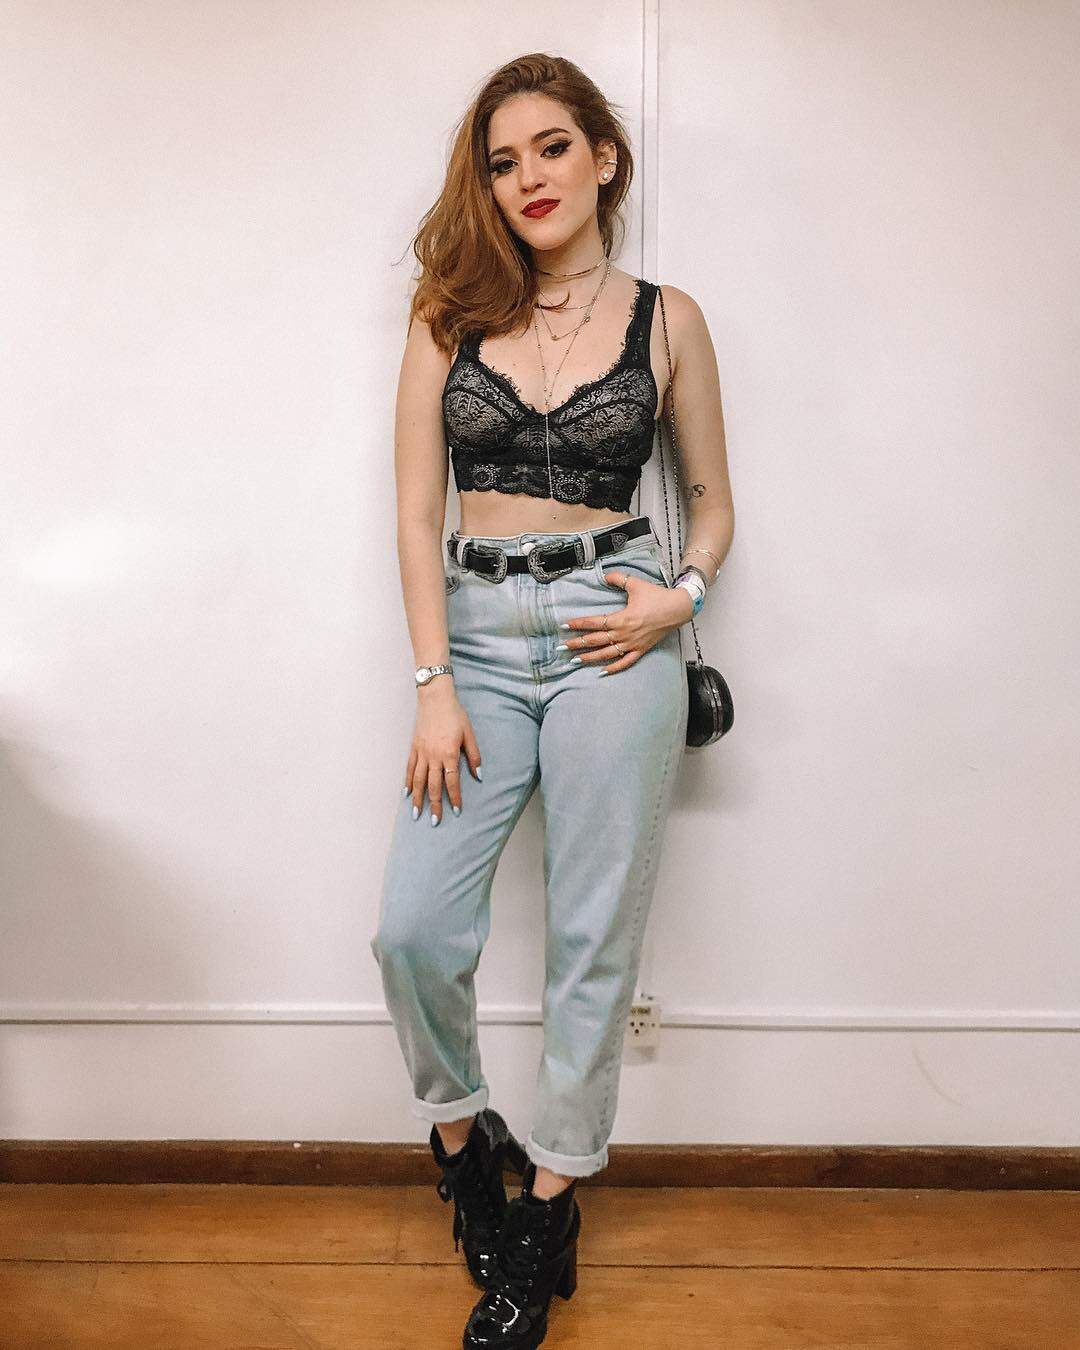 Ex-BBB Ana Clara vai só de jeans e lingerie para curtir show de pagode | Metropolitana FM